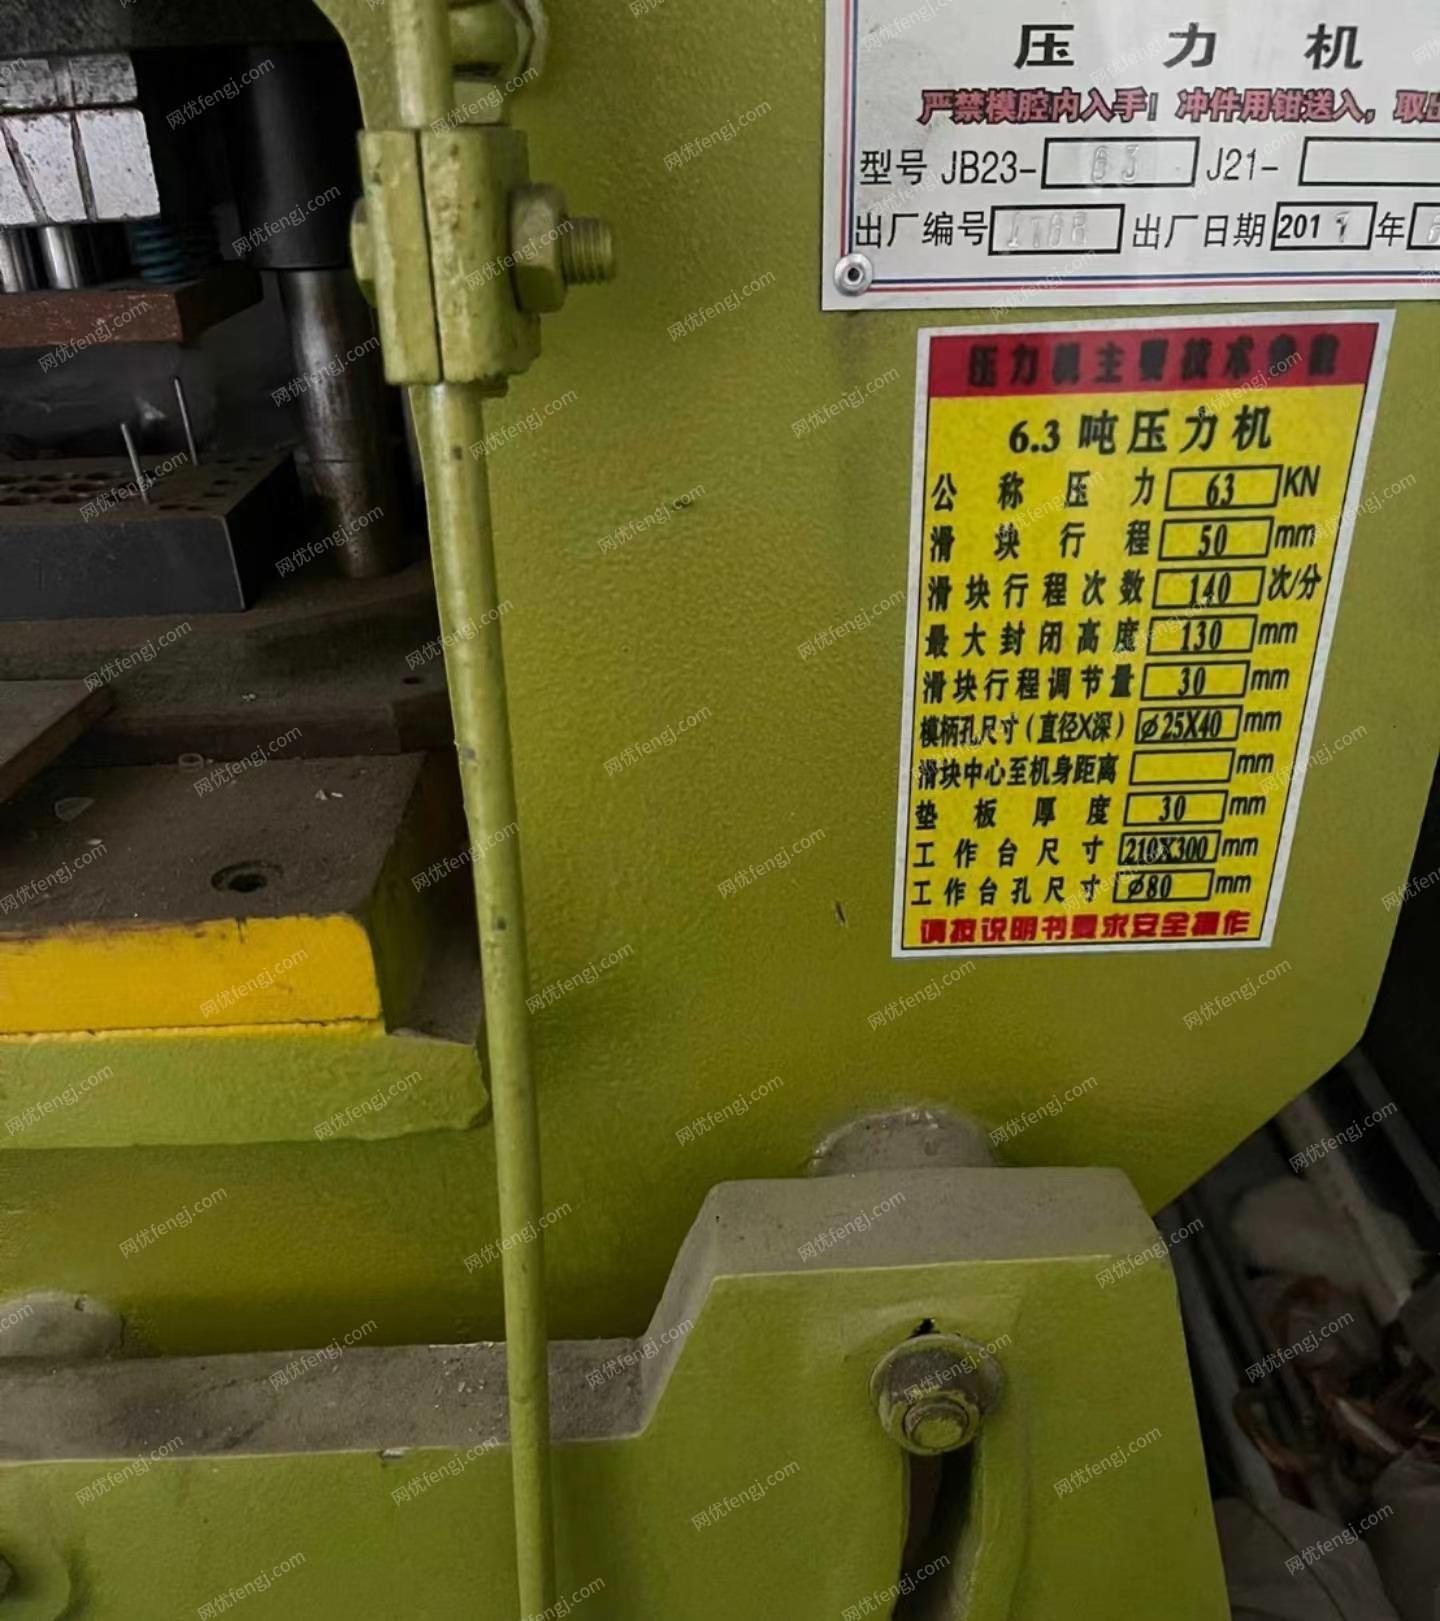 江苏常州出售6.3吨冲床、压力机